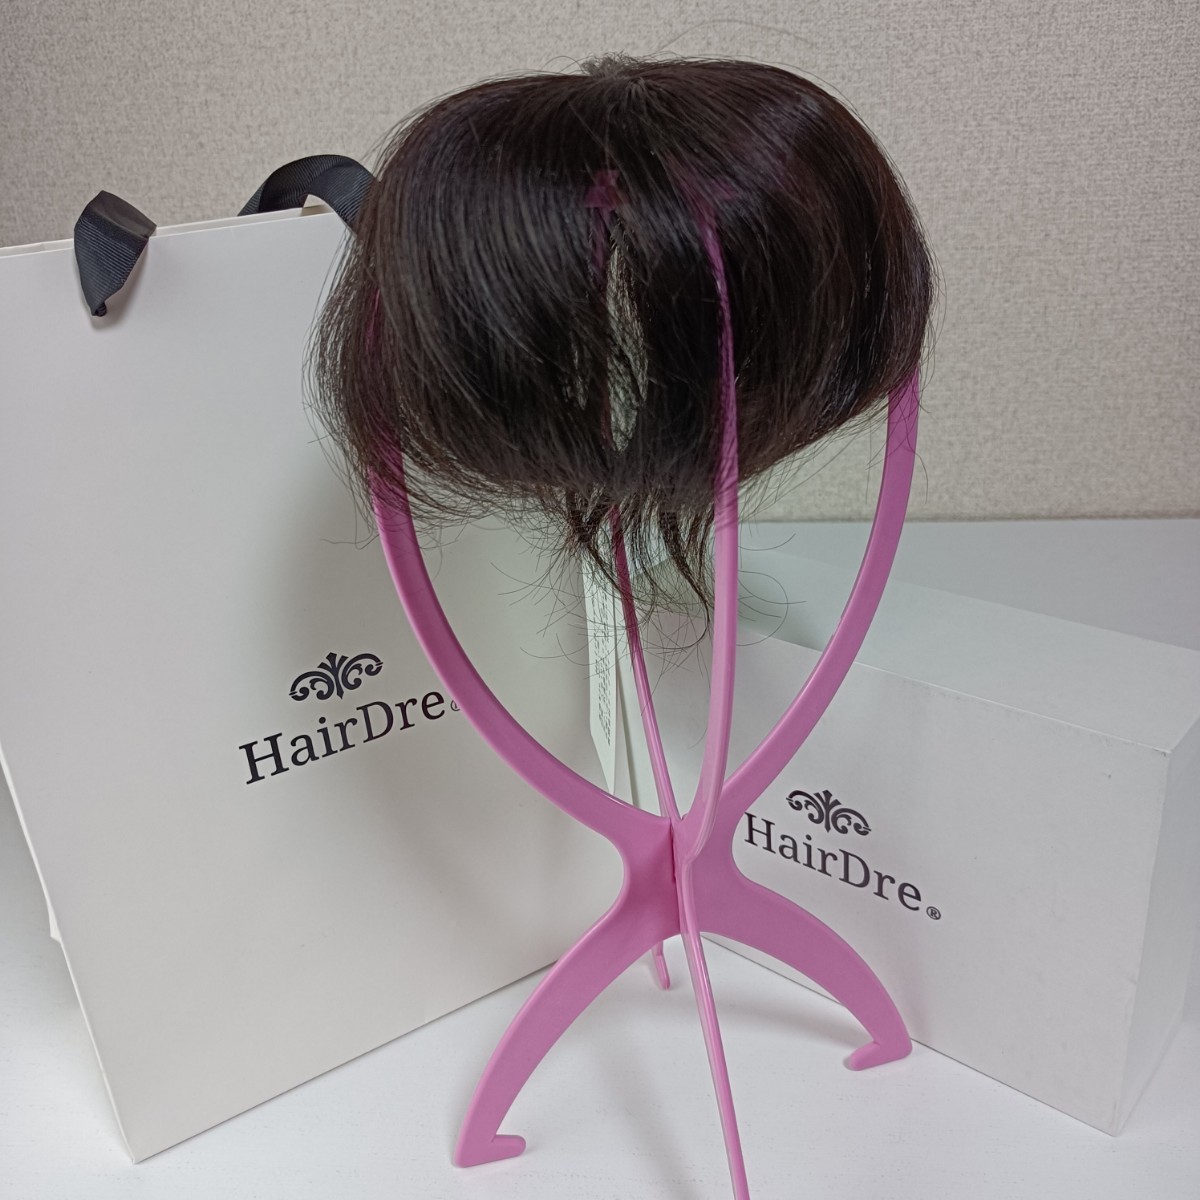 【新品箱付】HairDre-S ヘアドレ ロング 人毛100% ウィッグ カツラ 女性 トップ ボリューム アップ ヘアピース 部分ウィッグ 高品質